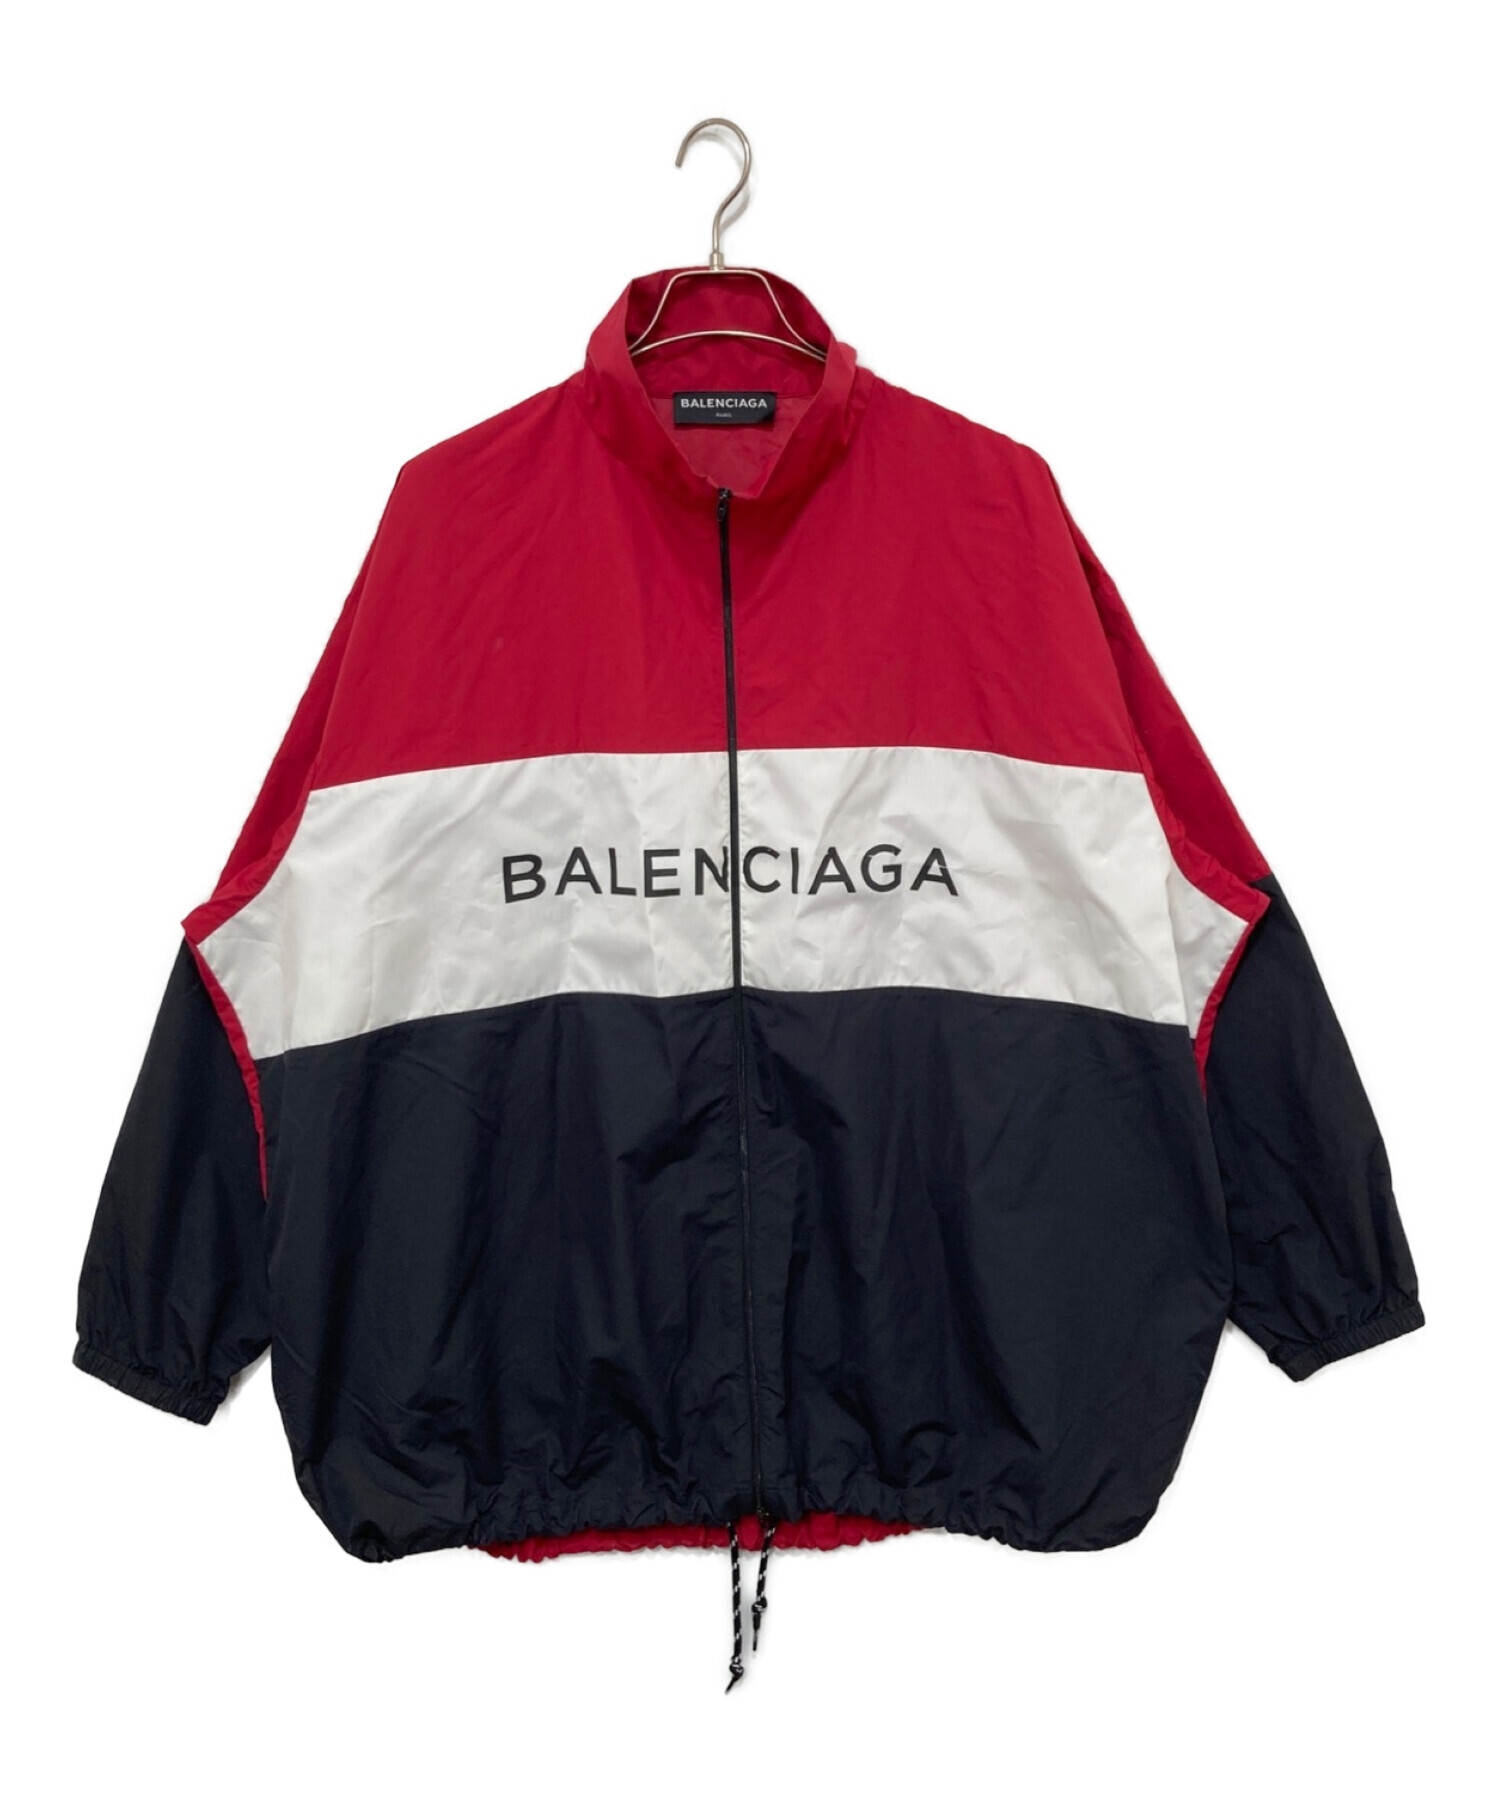 BALENCIAGA (バレンシアガ) ナイロントラックジャケット レッド サイズ:39